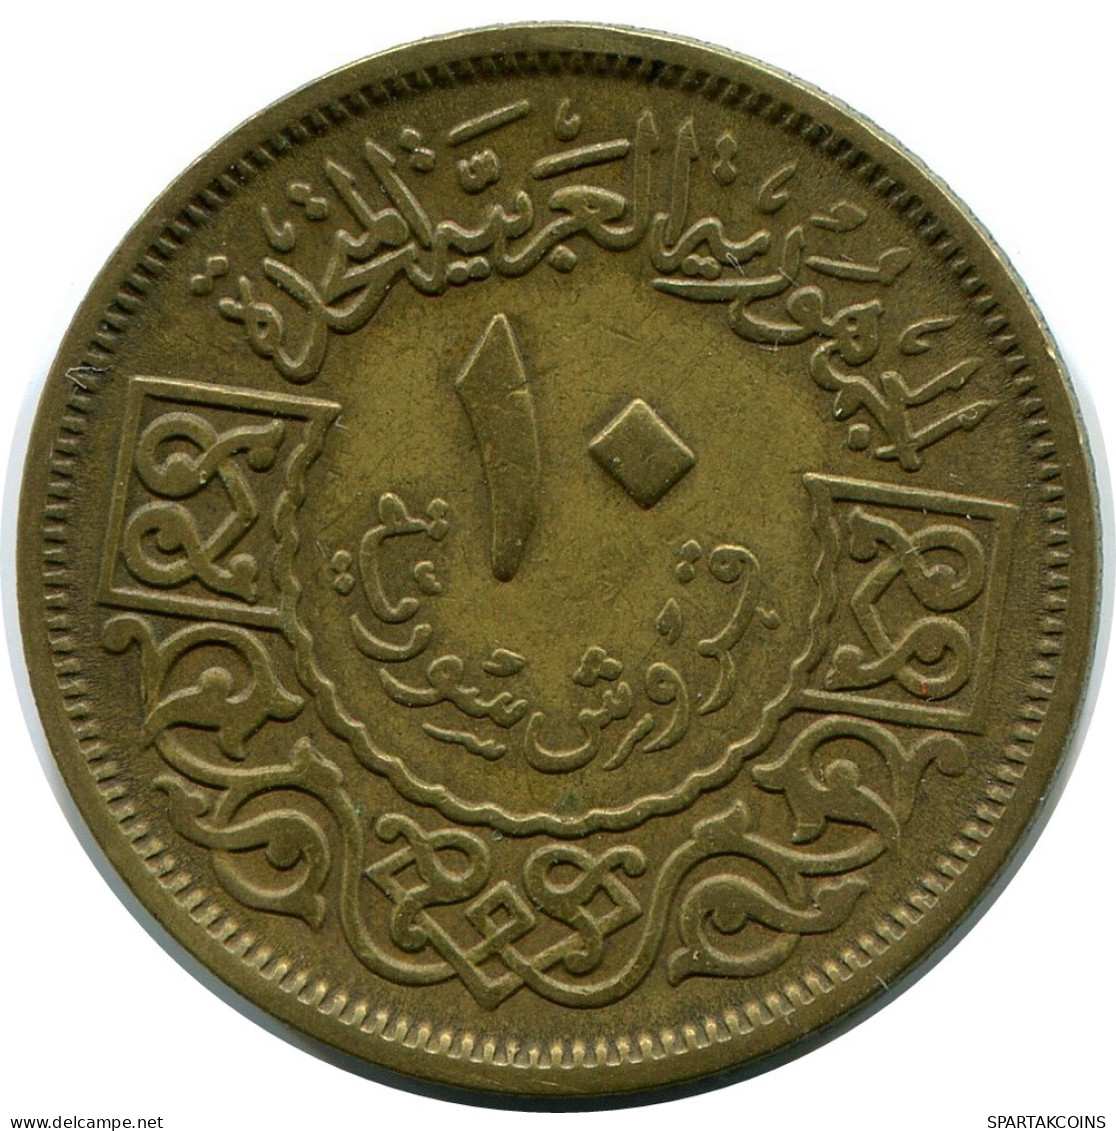 10 QIRSH / PIASTRES 1960 SYRIEN SYRIA Islamisch Münze #AP557..D - Syrien